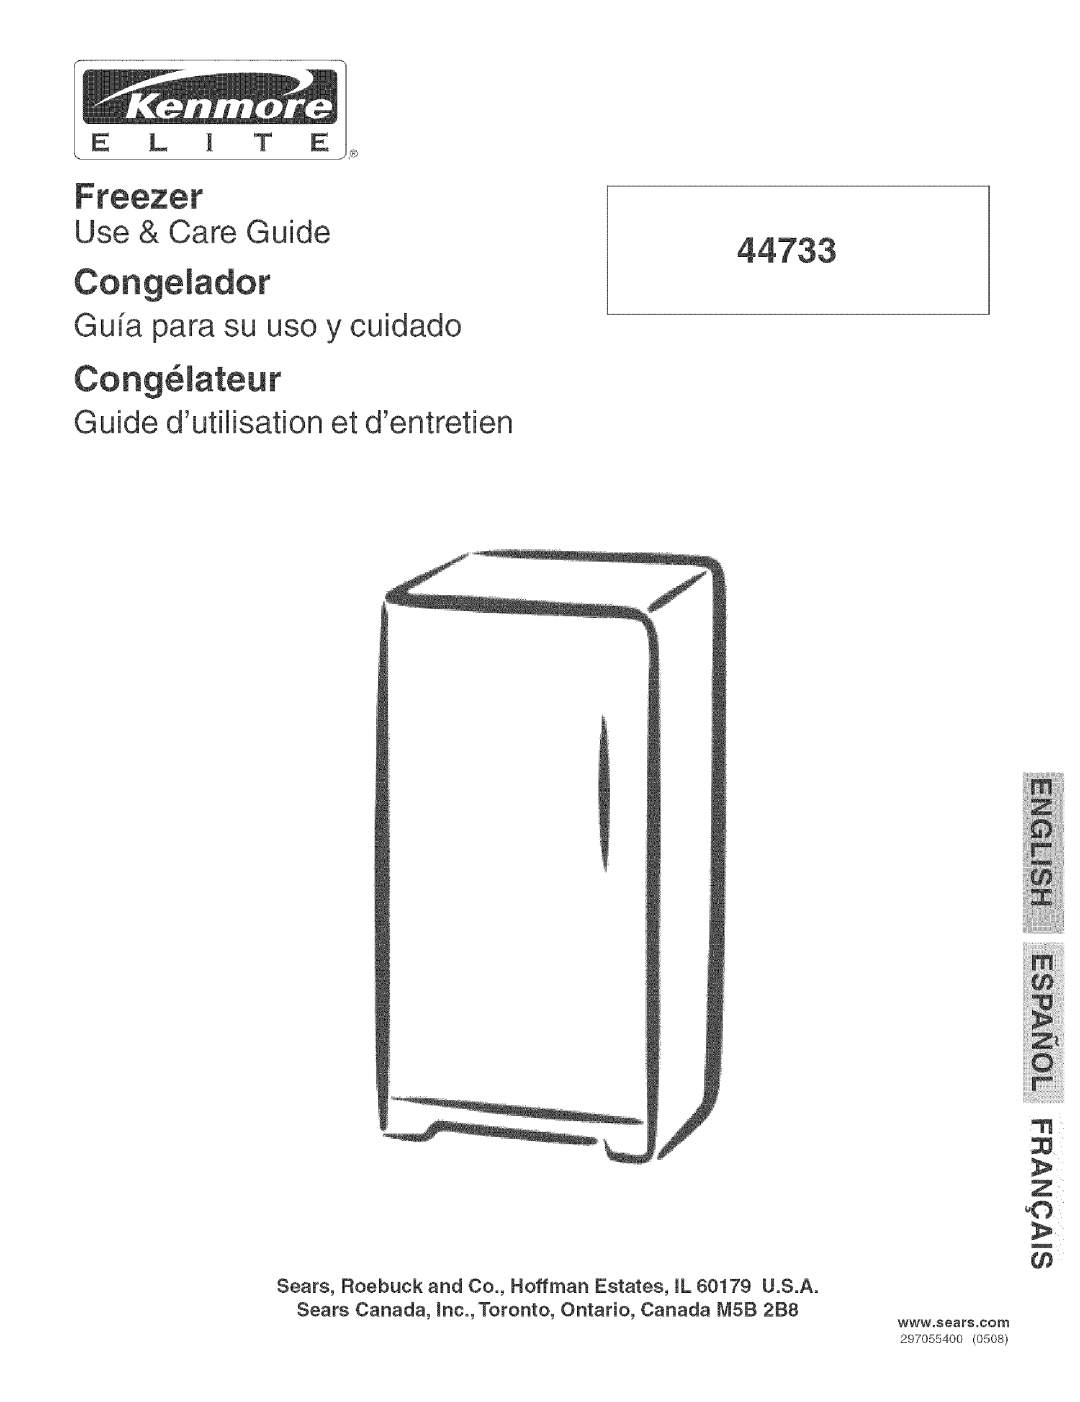 Kenmore 44733 manual Congelador, Cong61ateur, Use & Care Guide, Gufa para su uso y cuidado, E L l T E 